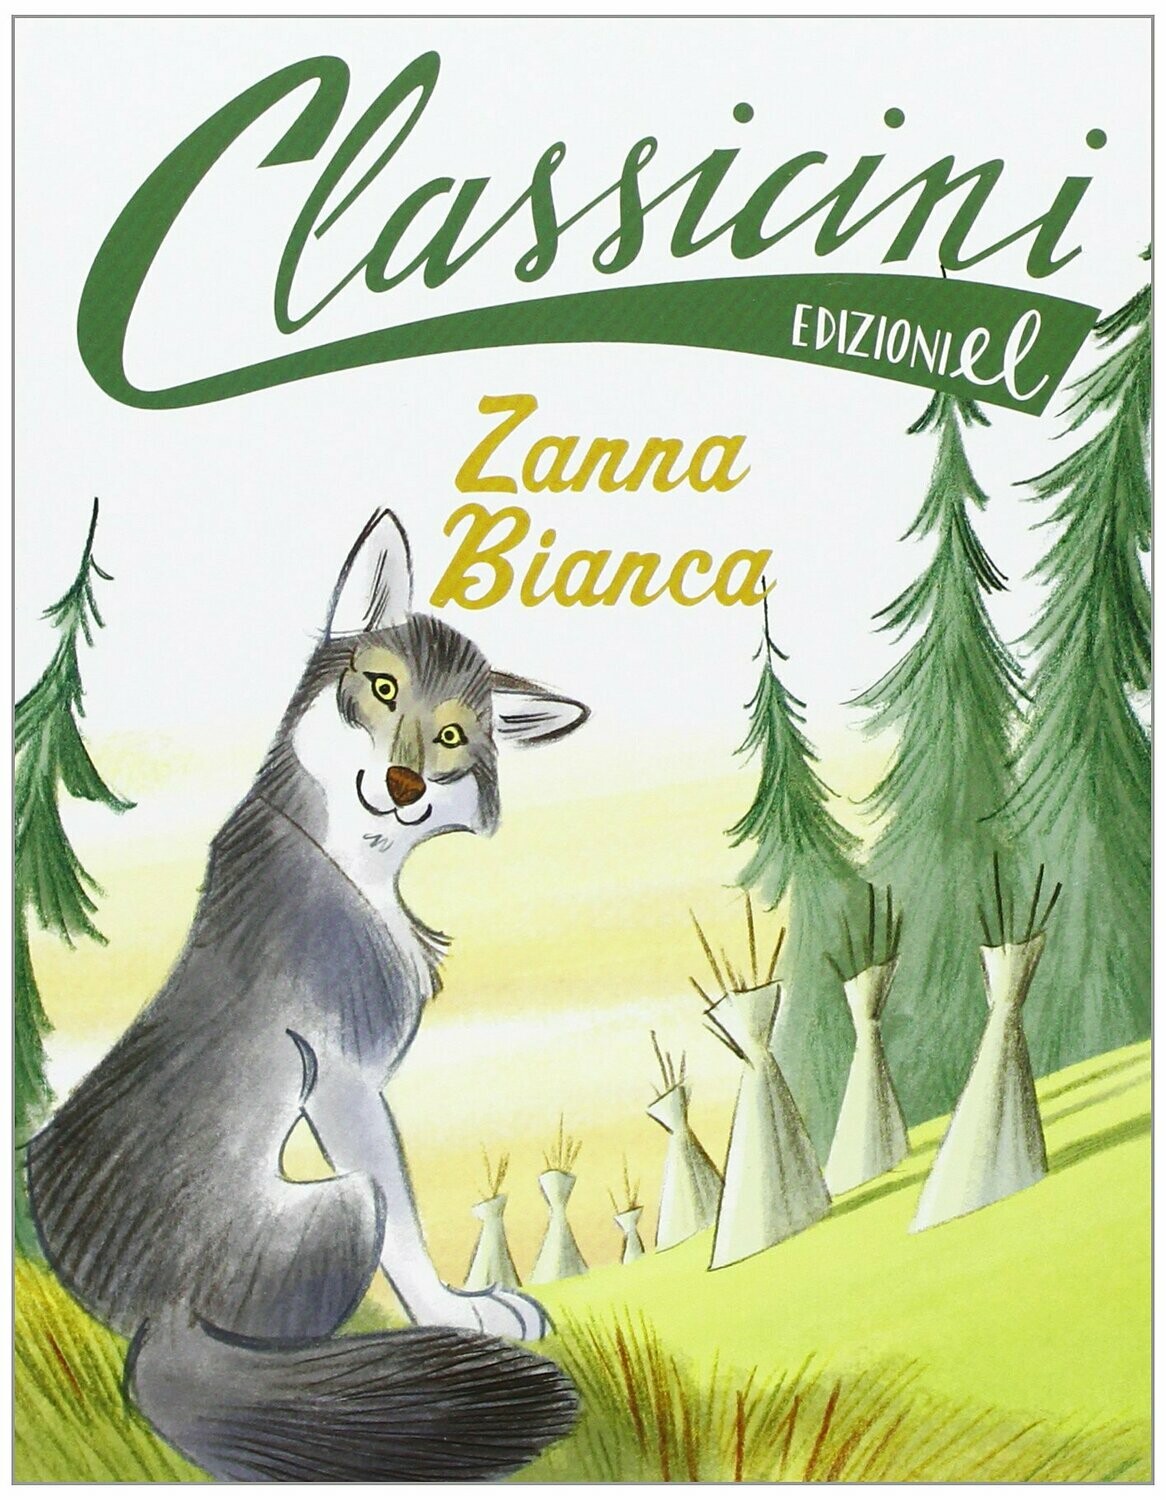 Zanna Bianca. Classicini